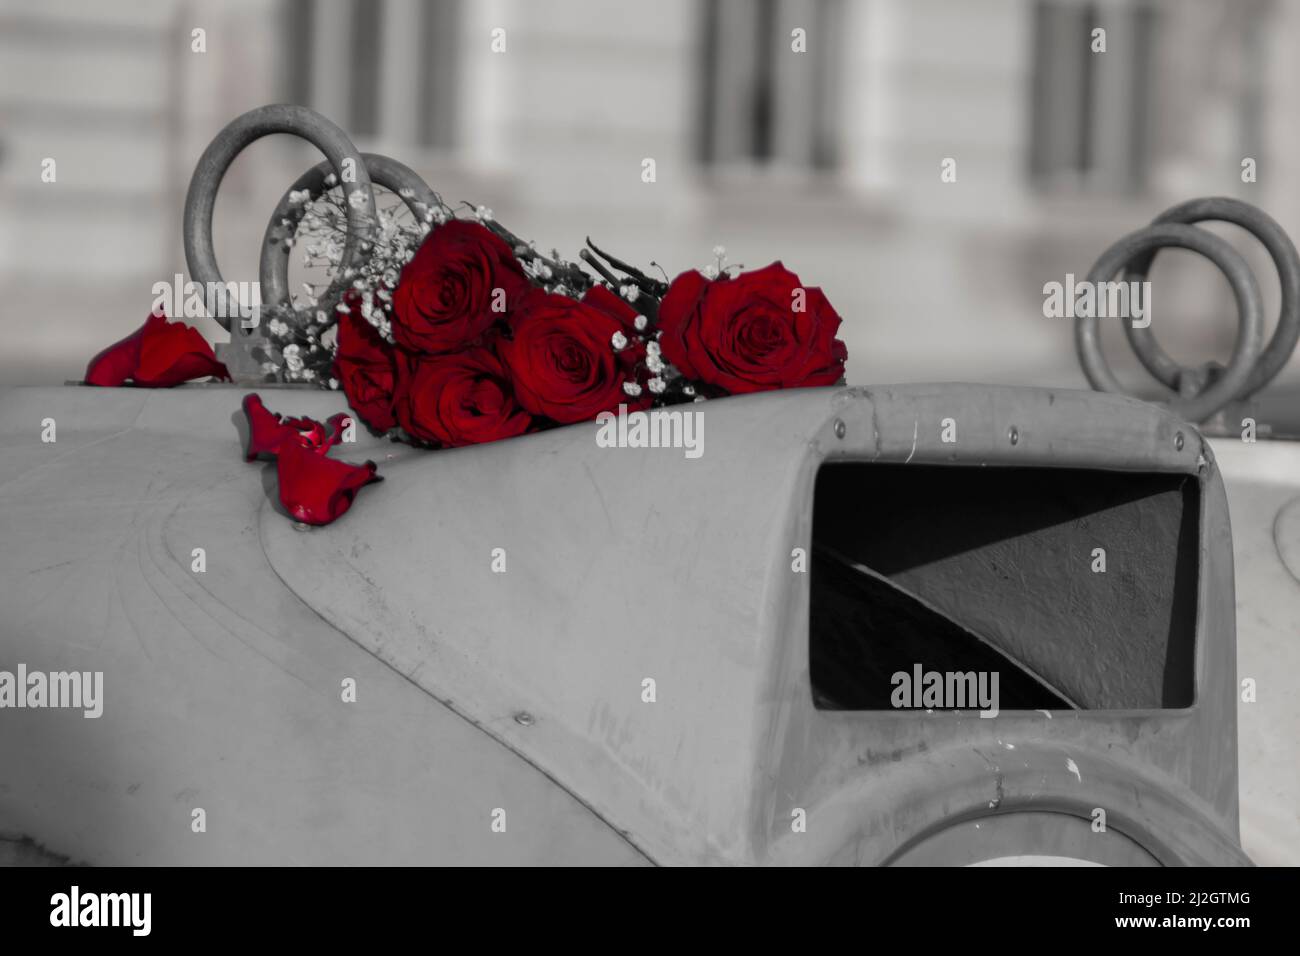 Vers 2022, Sofia, Bulgarie : photo en noir et blanc avec des roses rouges sur une poubelle le jour de la Saint-Valentin. Un amour sans demande, des fleurs jetées. Banque D'Images